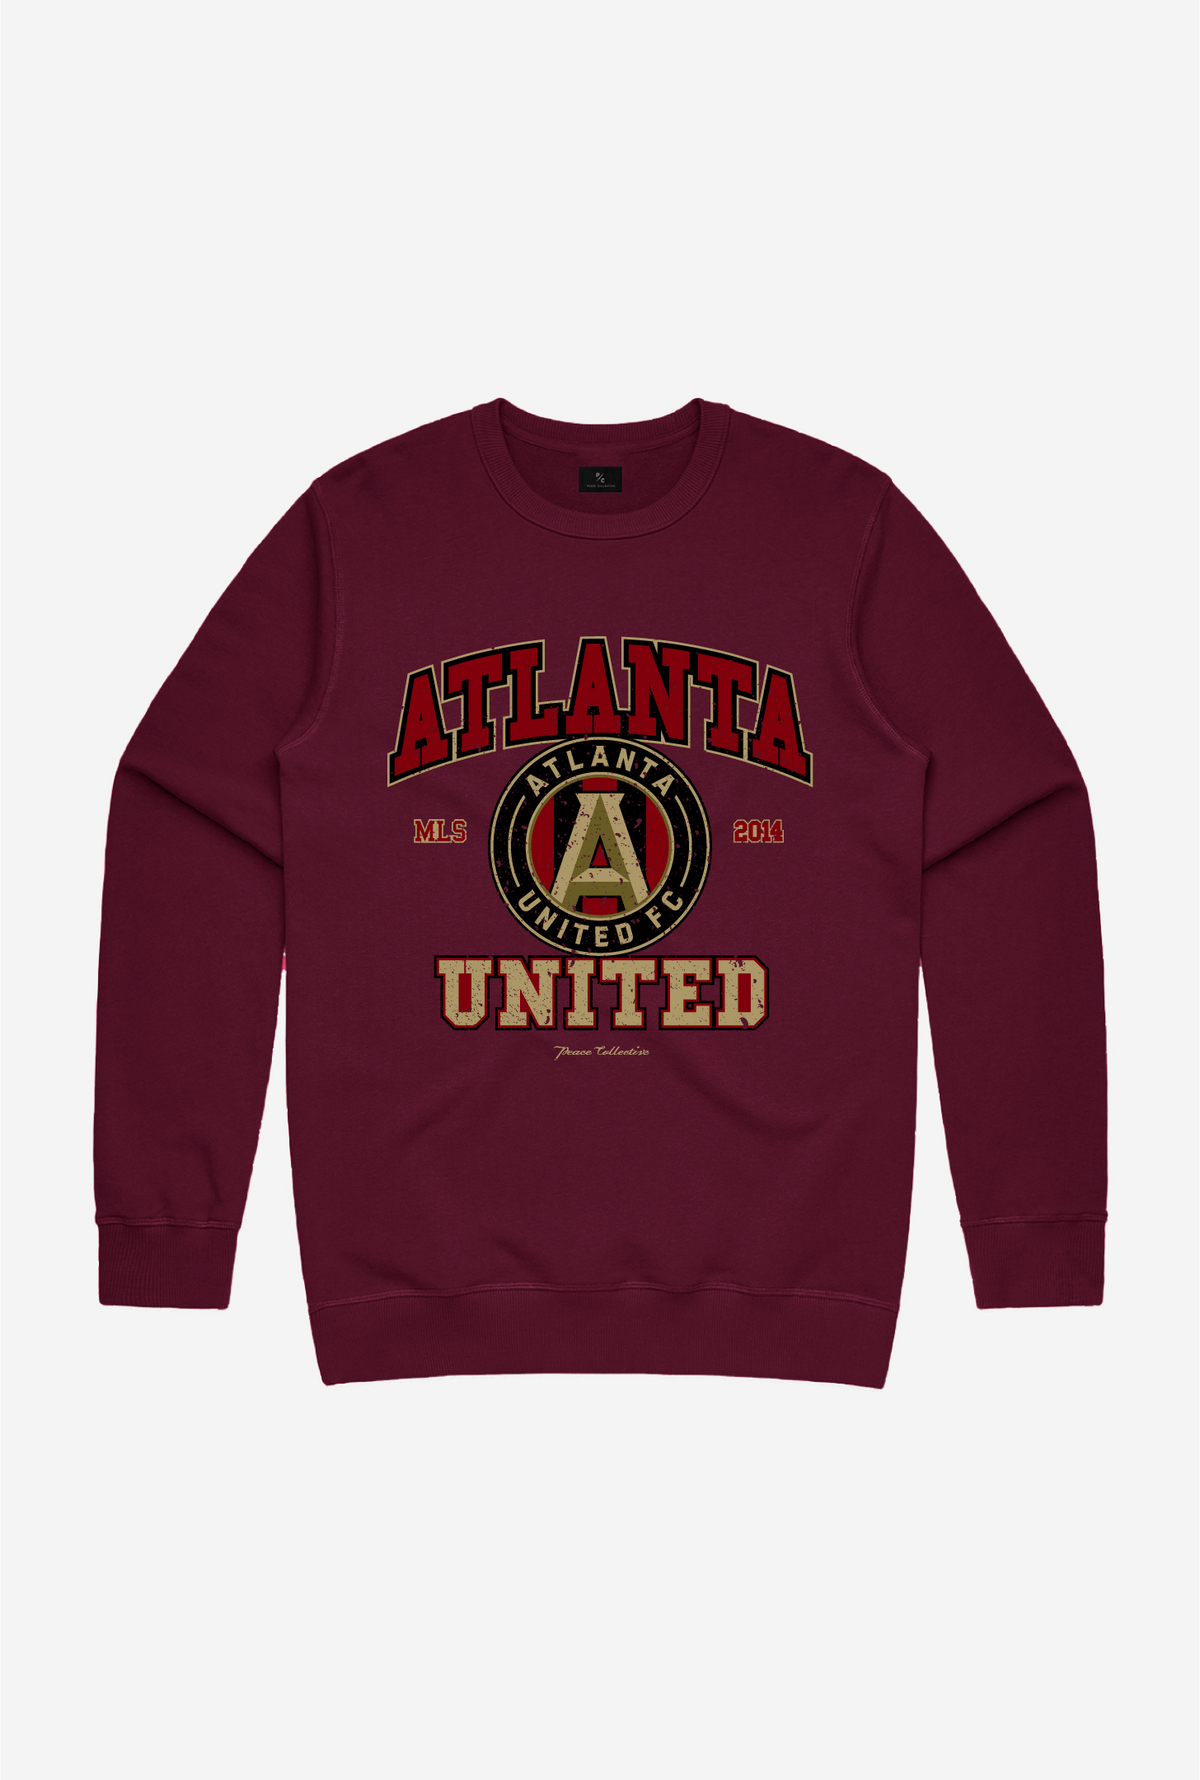 Atlanta United FC Vintage Crewneck - Maroon